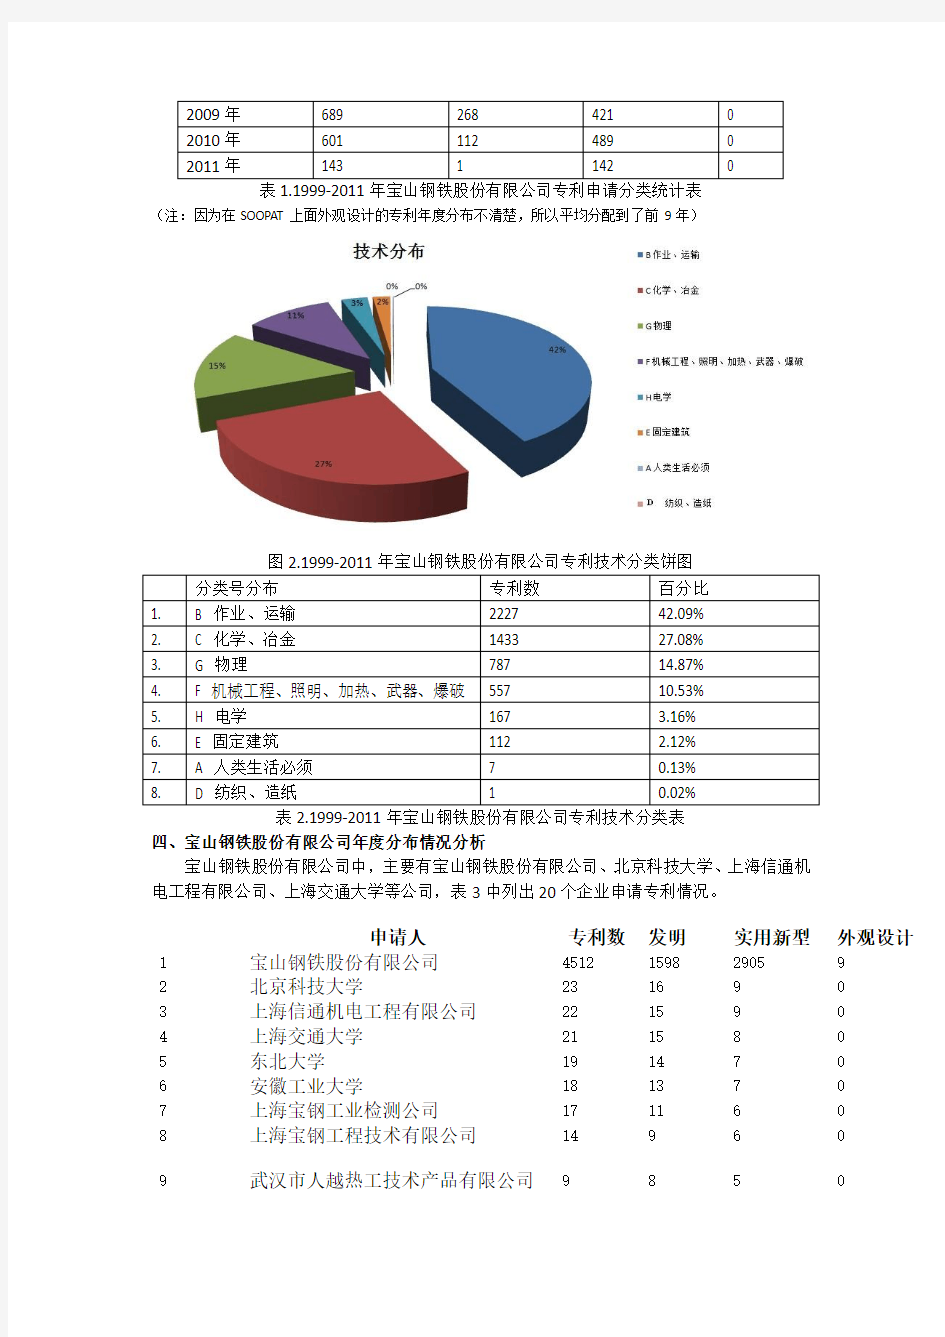 宝山钢铁股份有限公司专利申请状况分析